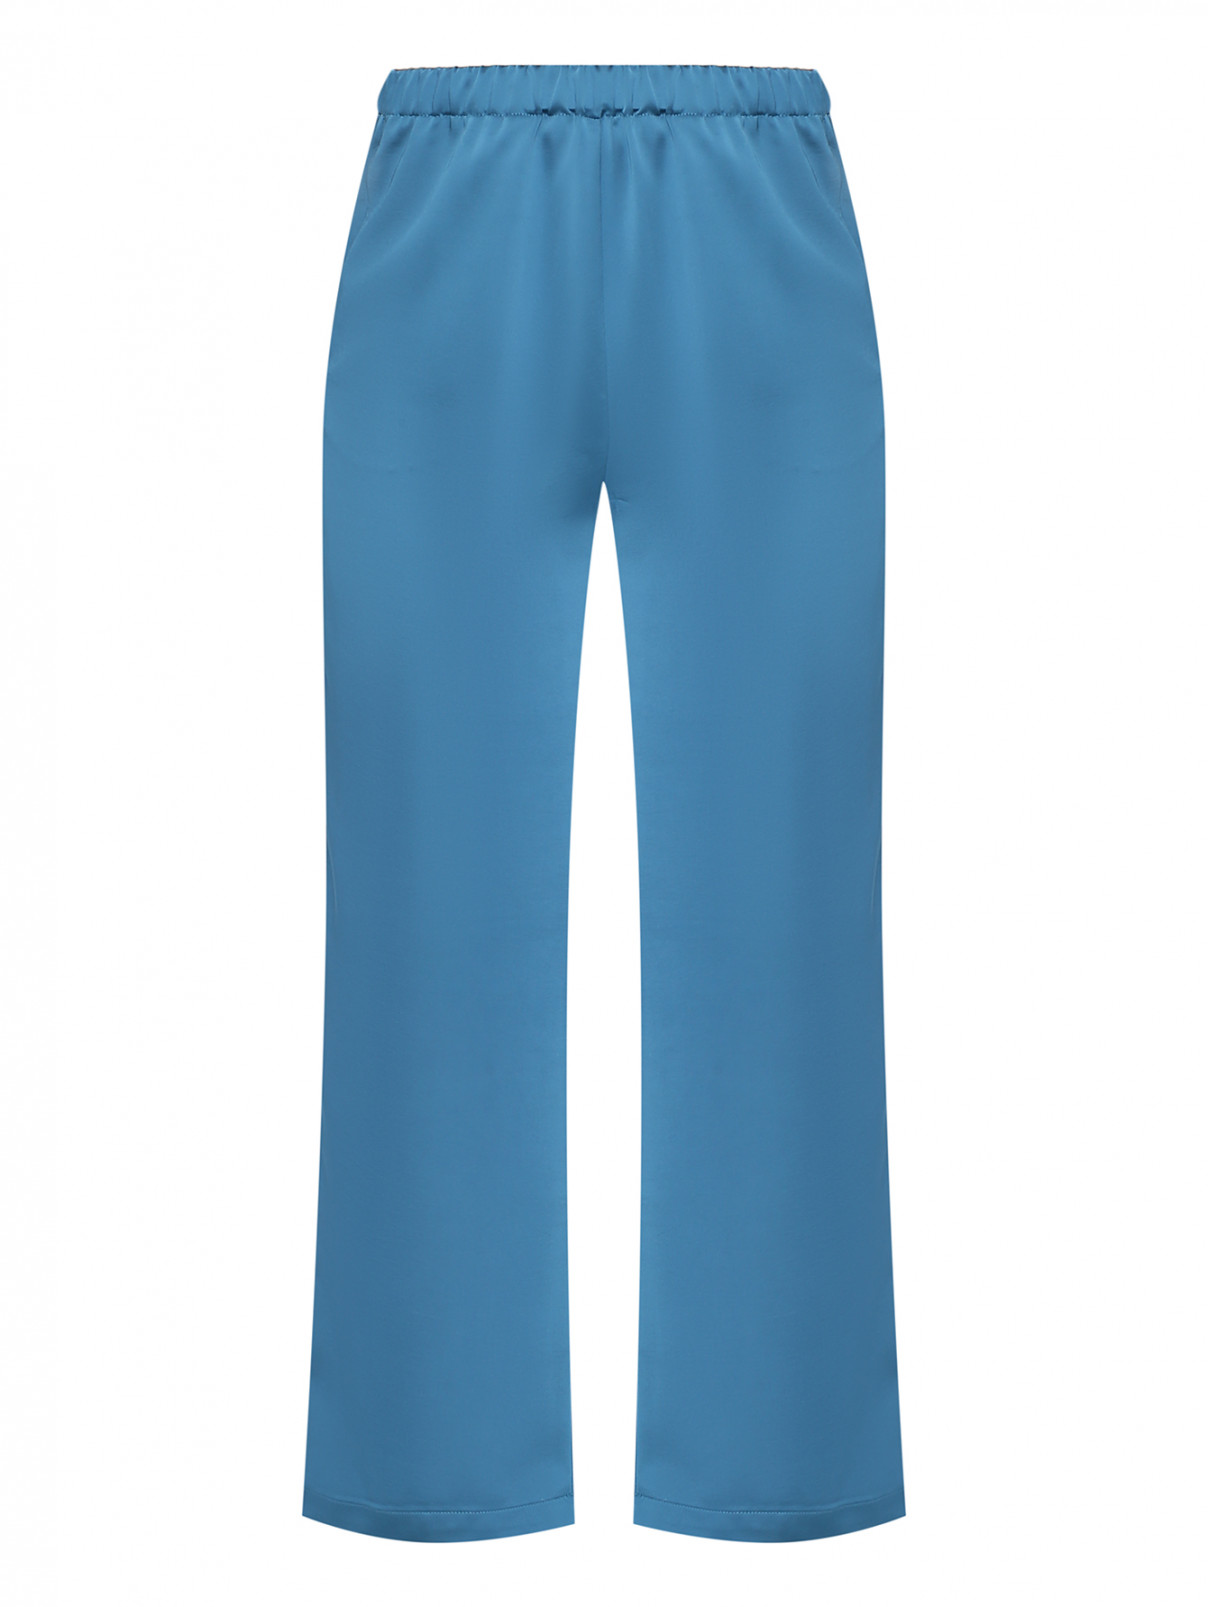 Сатиновые брюки на резинке с карманами Marina Rinaldi  –  Общий вид  – Цвет:  Синий